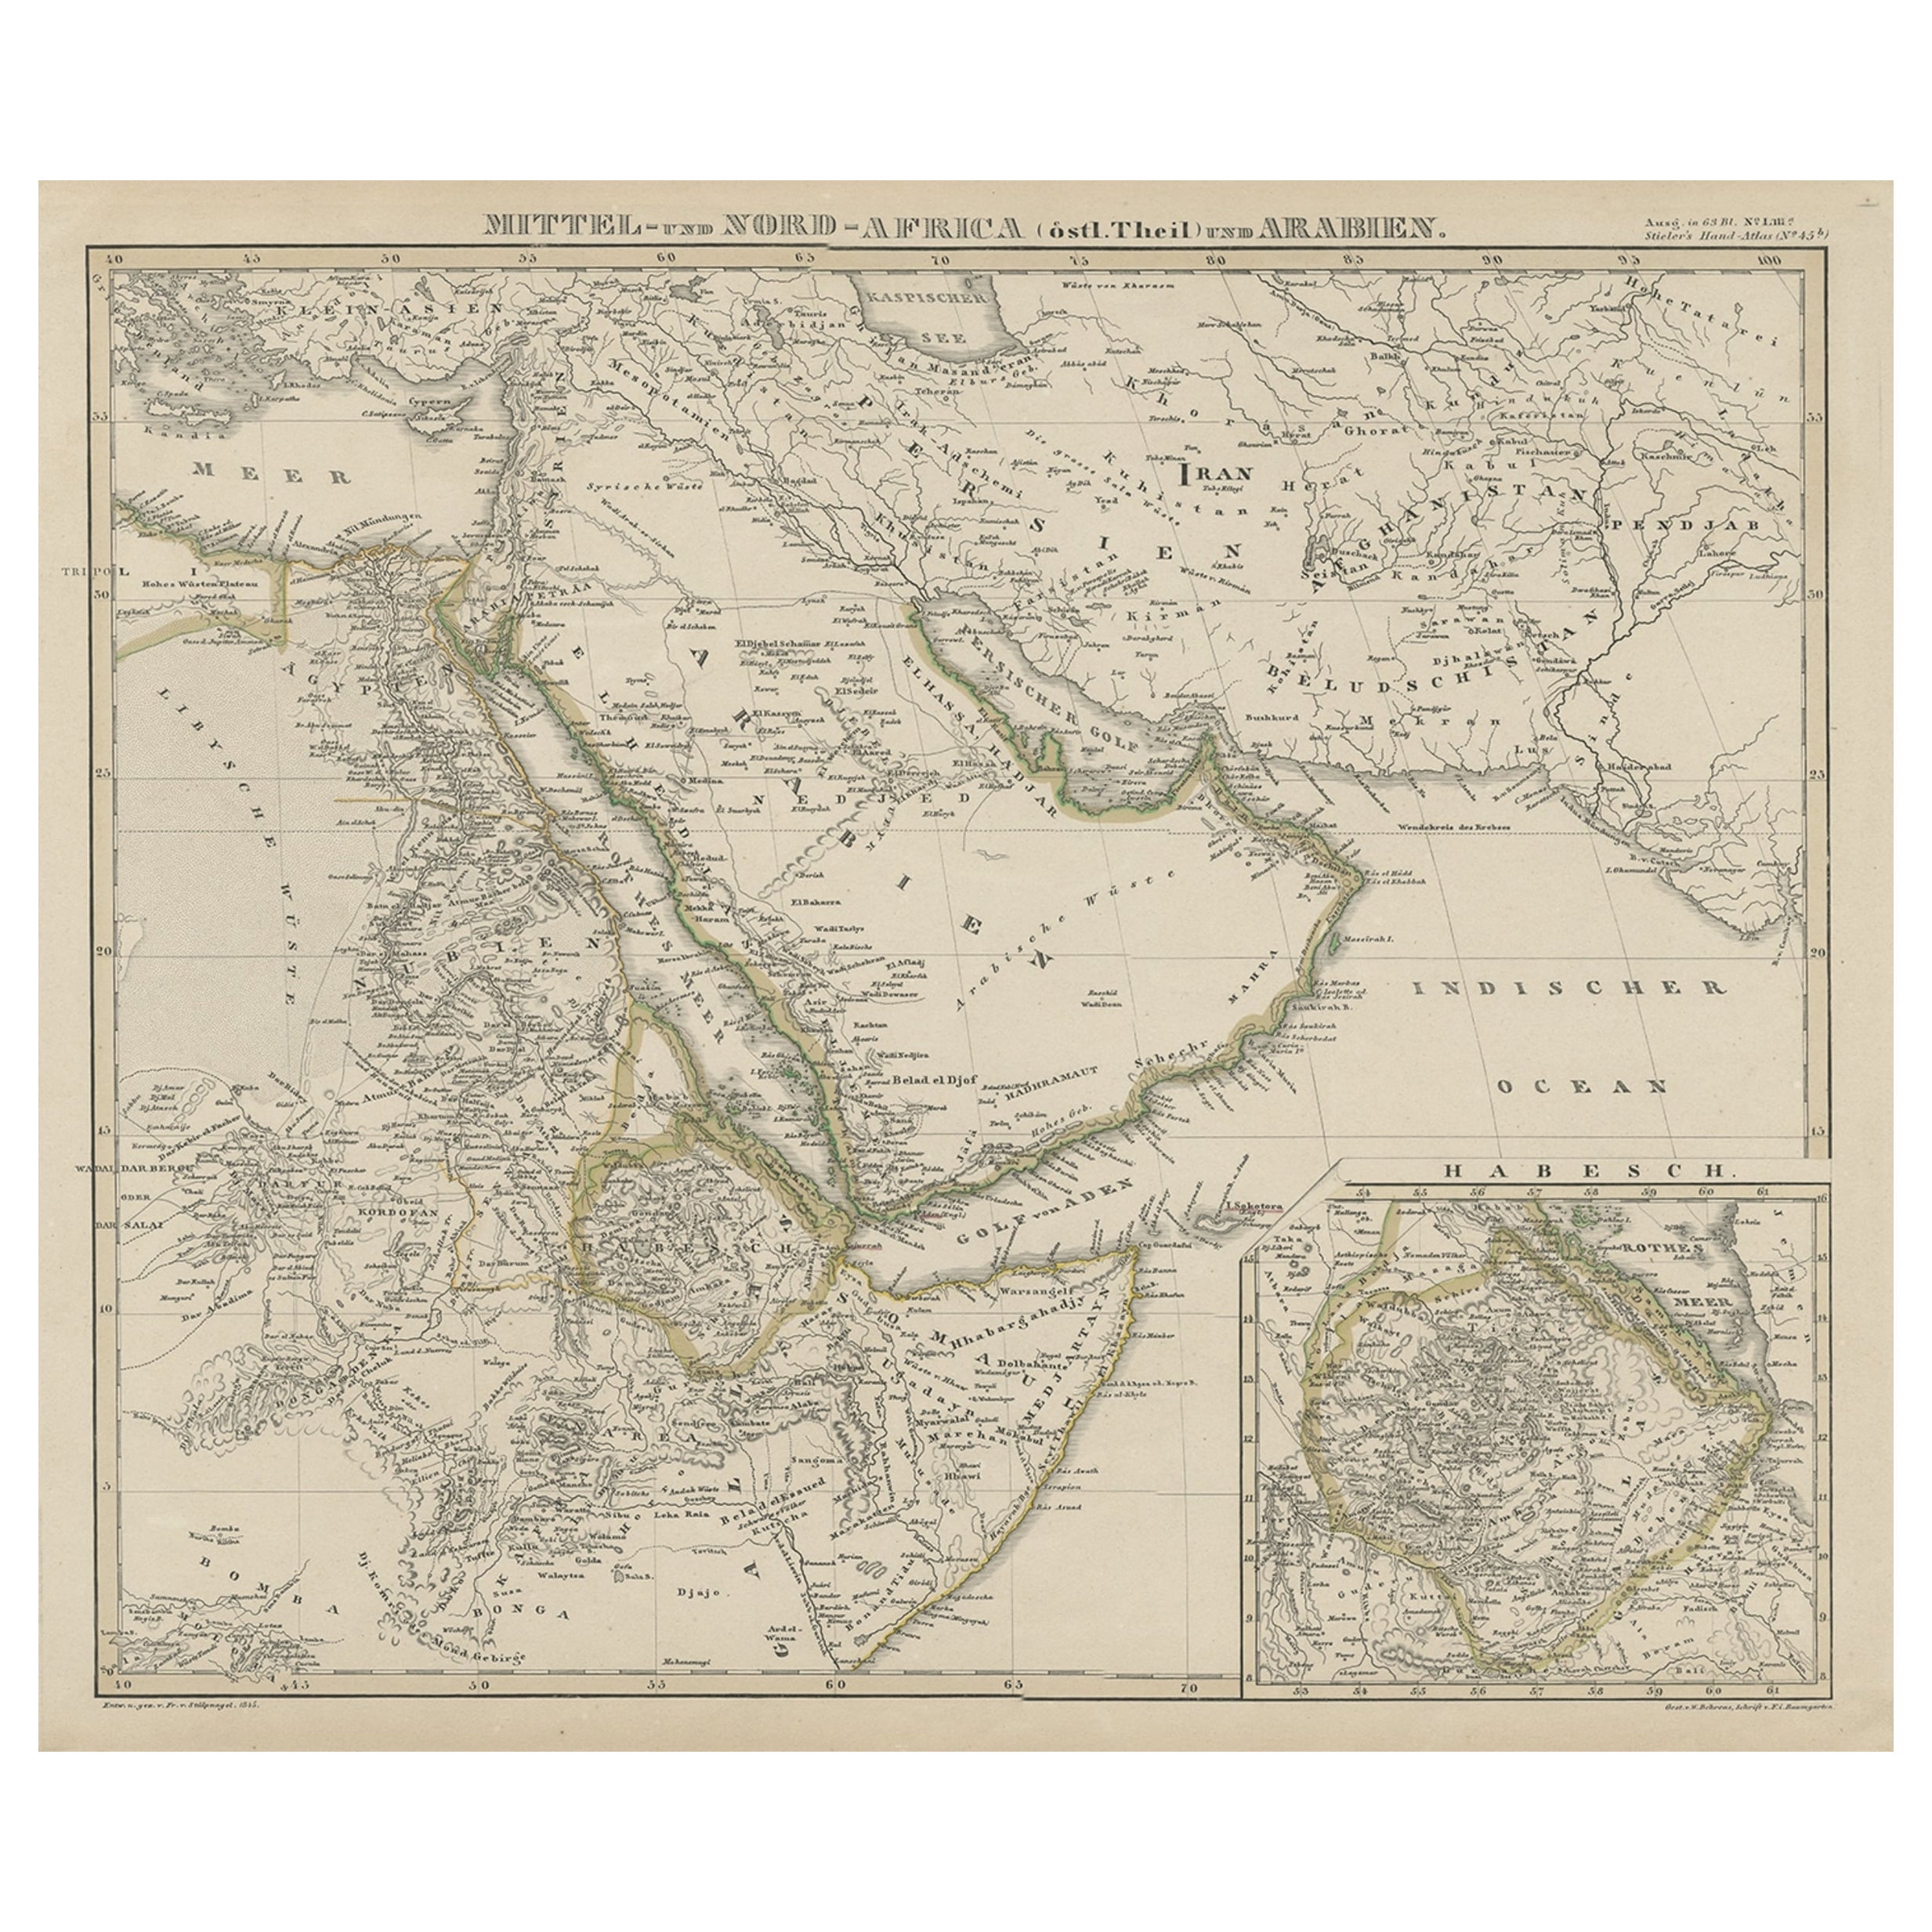 Afrique du Nord & centrale & Arabie, carte en médaillon de Habesch 'Ethiopia & Eritrea', 1845